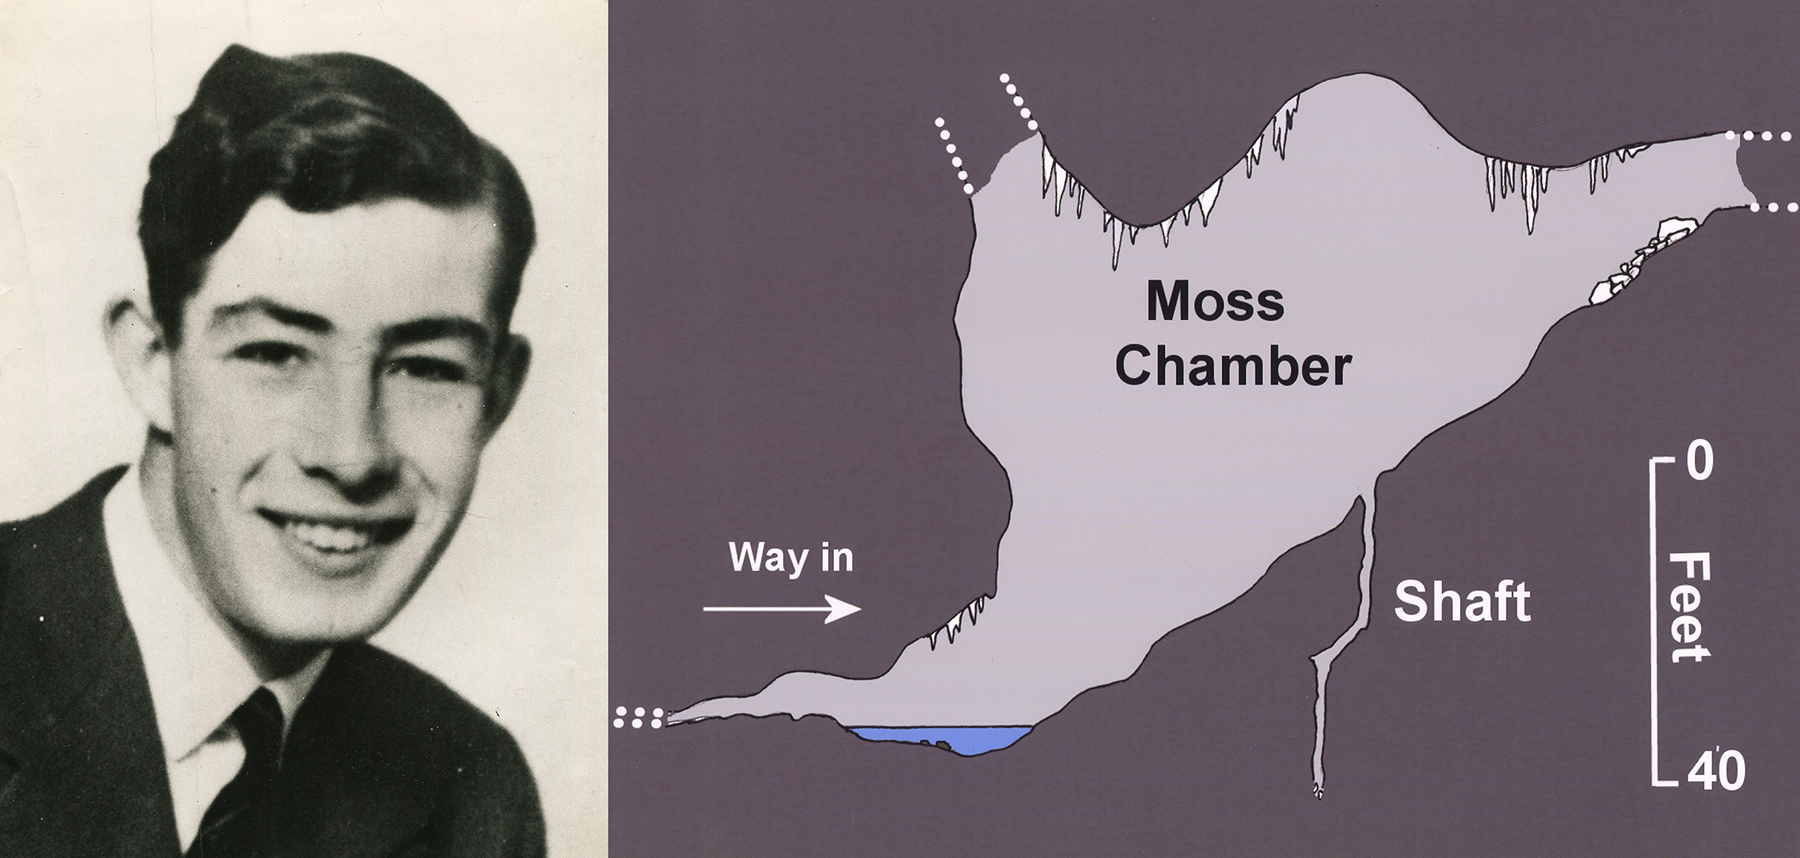 Neil Moss Moss Chamber